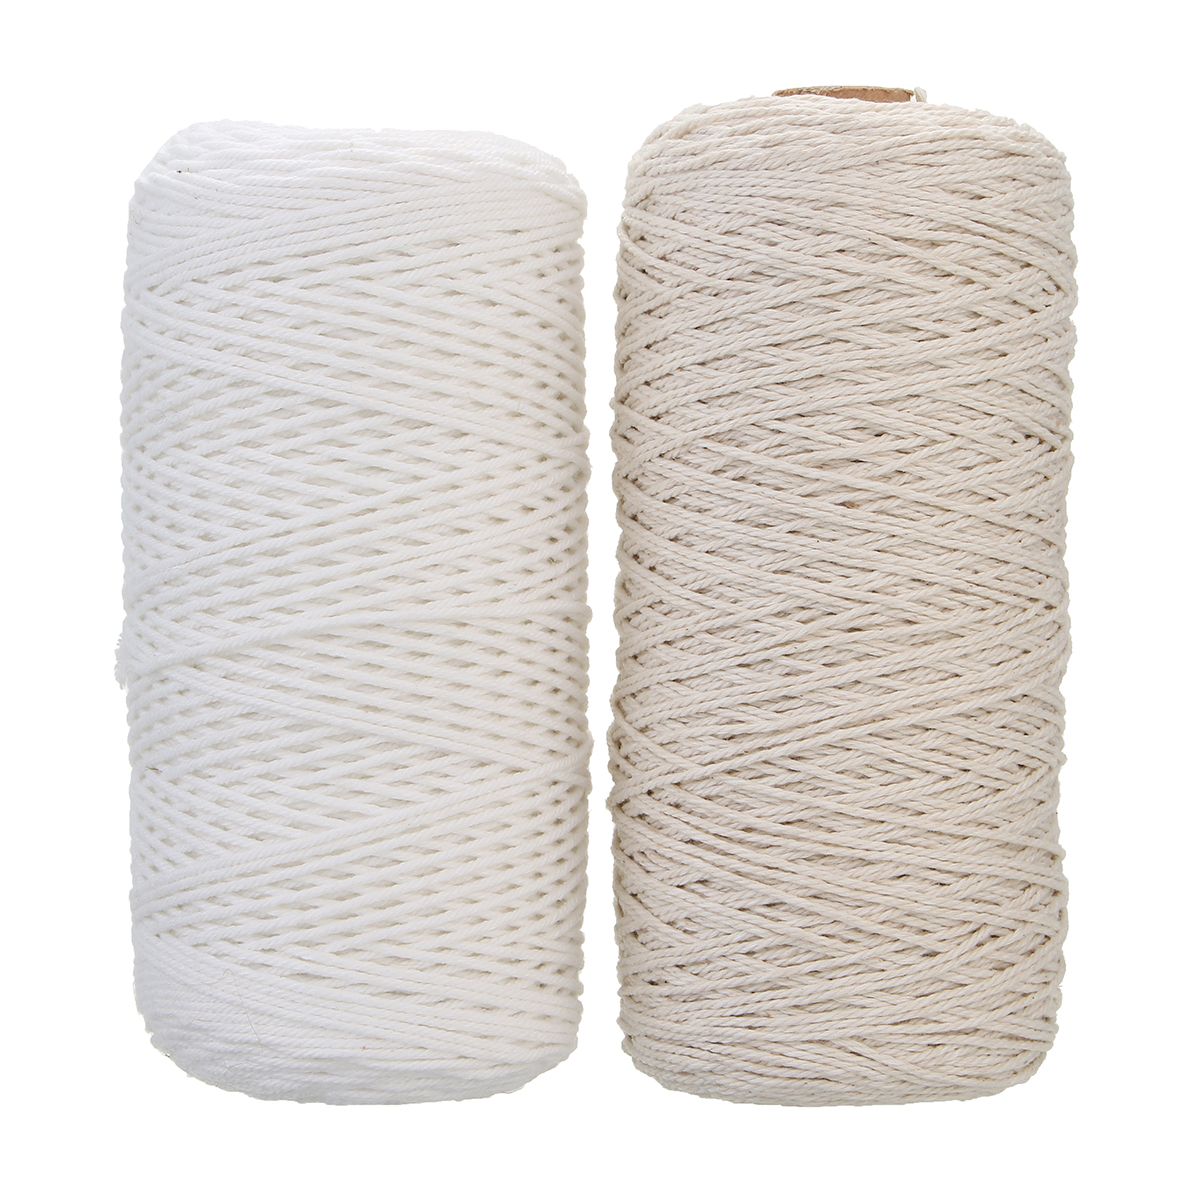 1mmx400m-Beige-White-Woven-Cotton-Rope-Braided-Wire-1362314